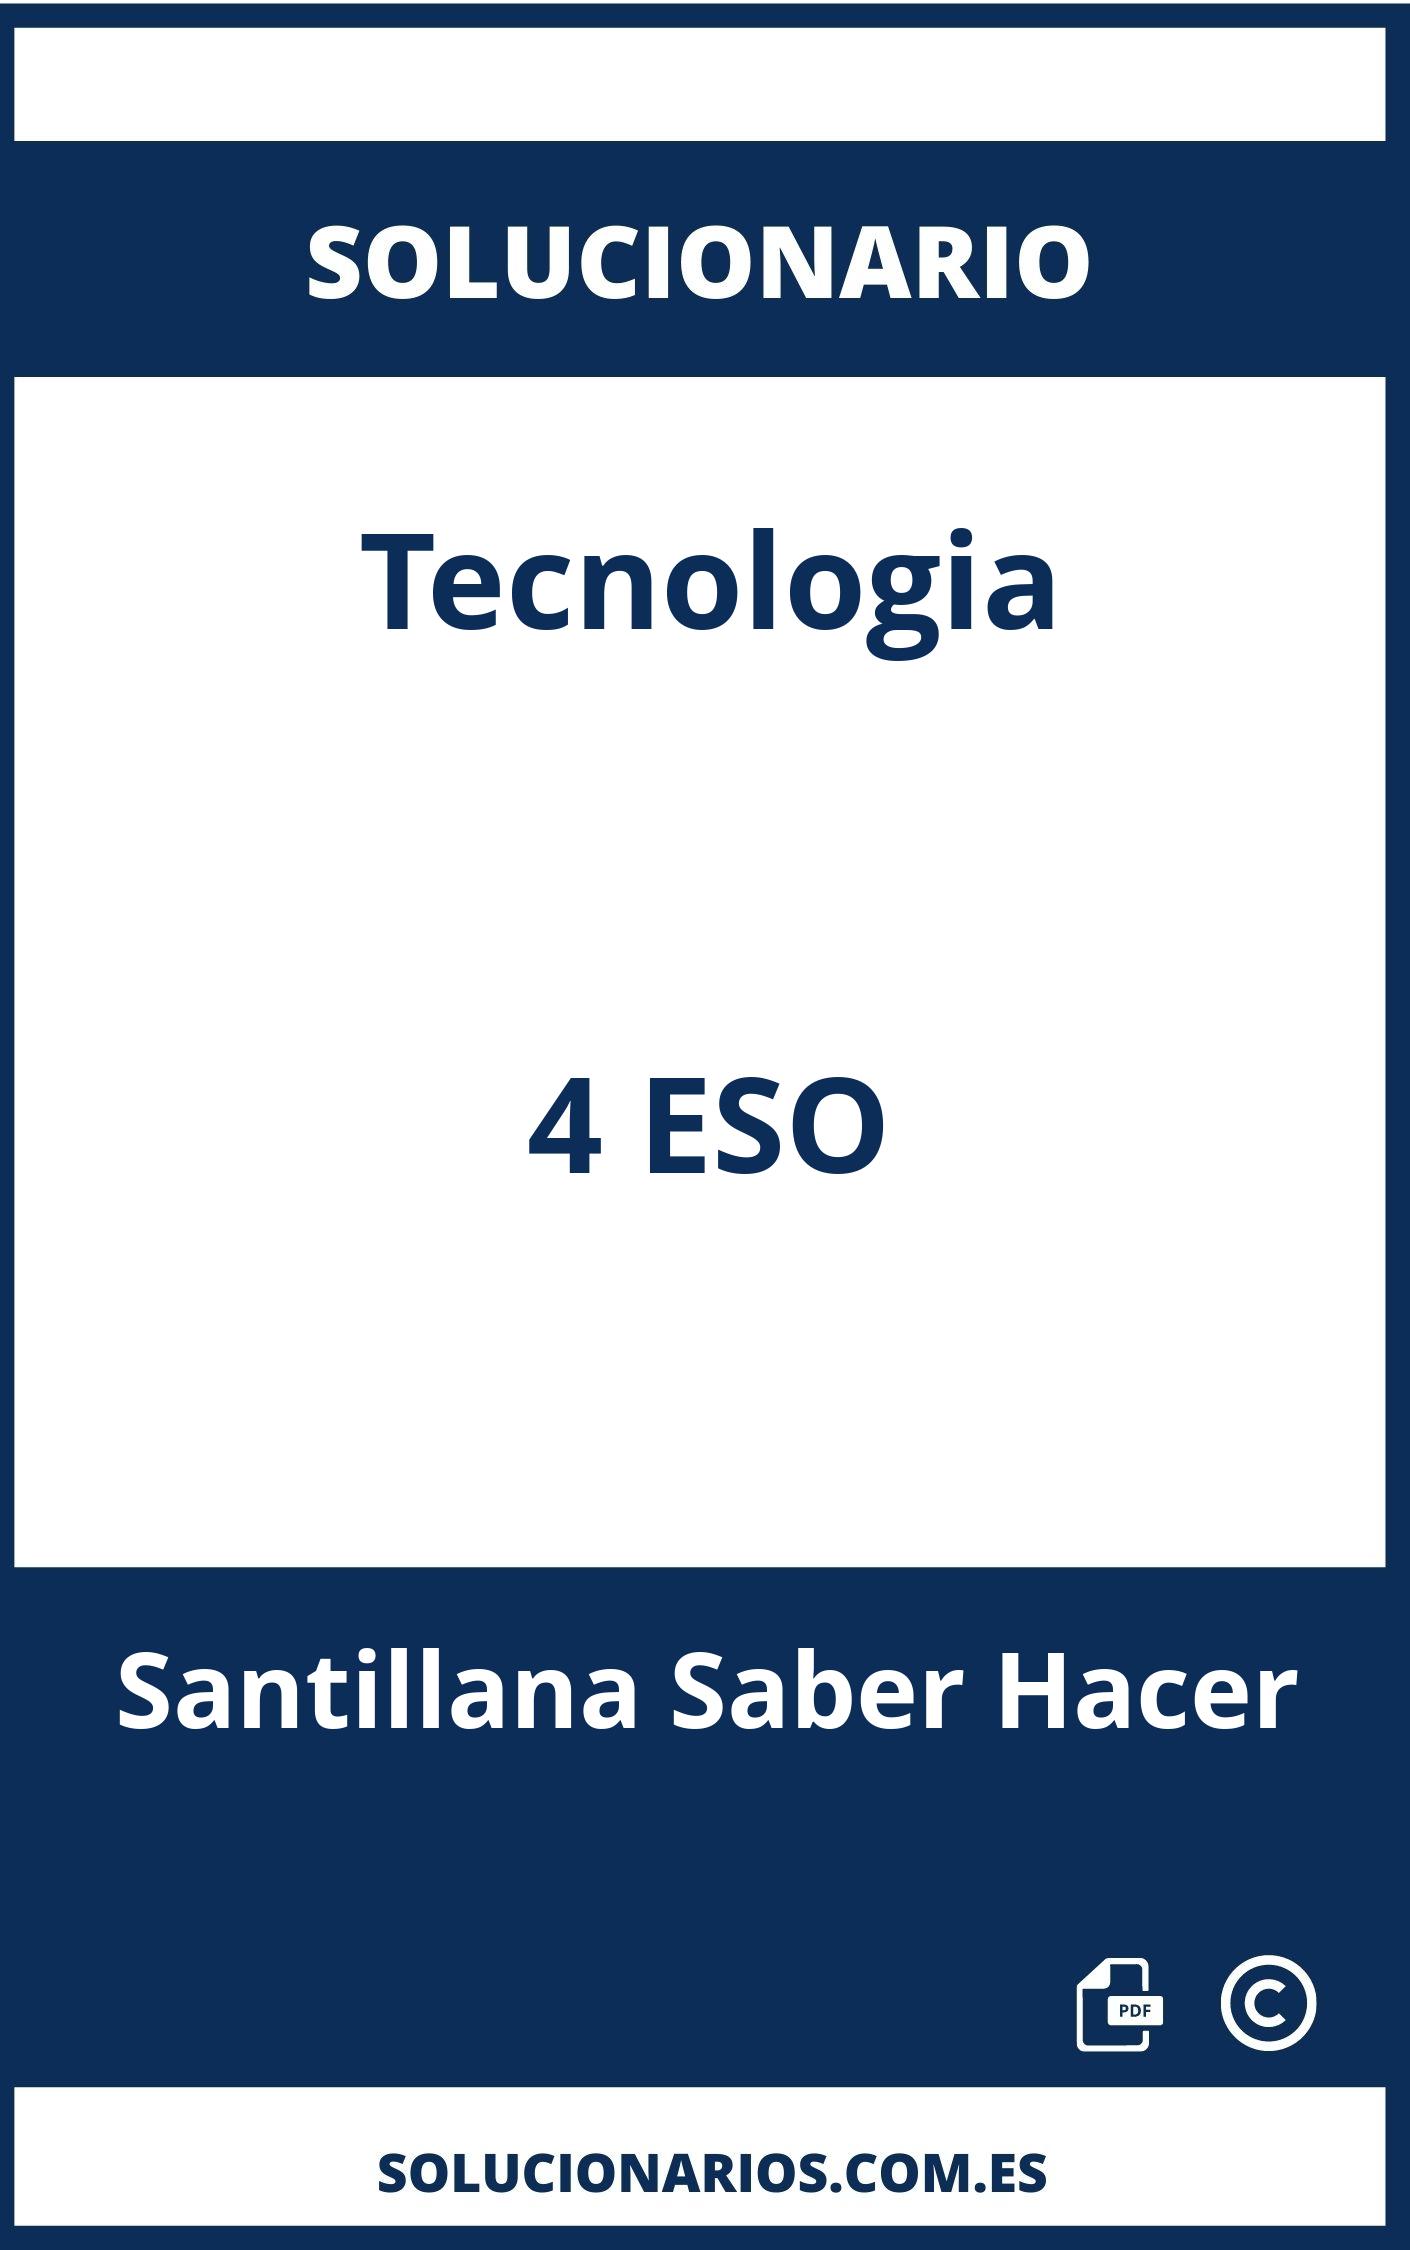 Solucionario Tecnologia 4 ESO Santillana Saber Hacer